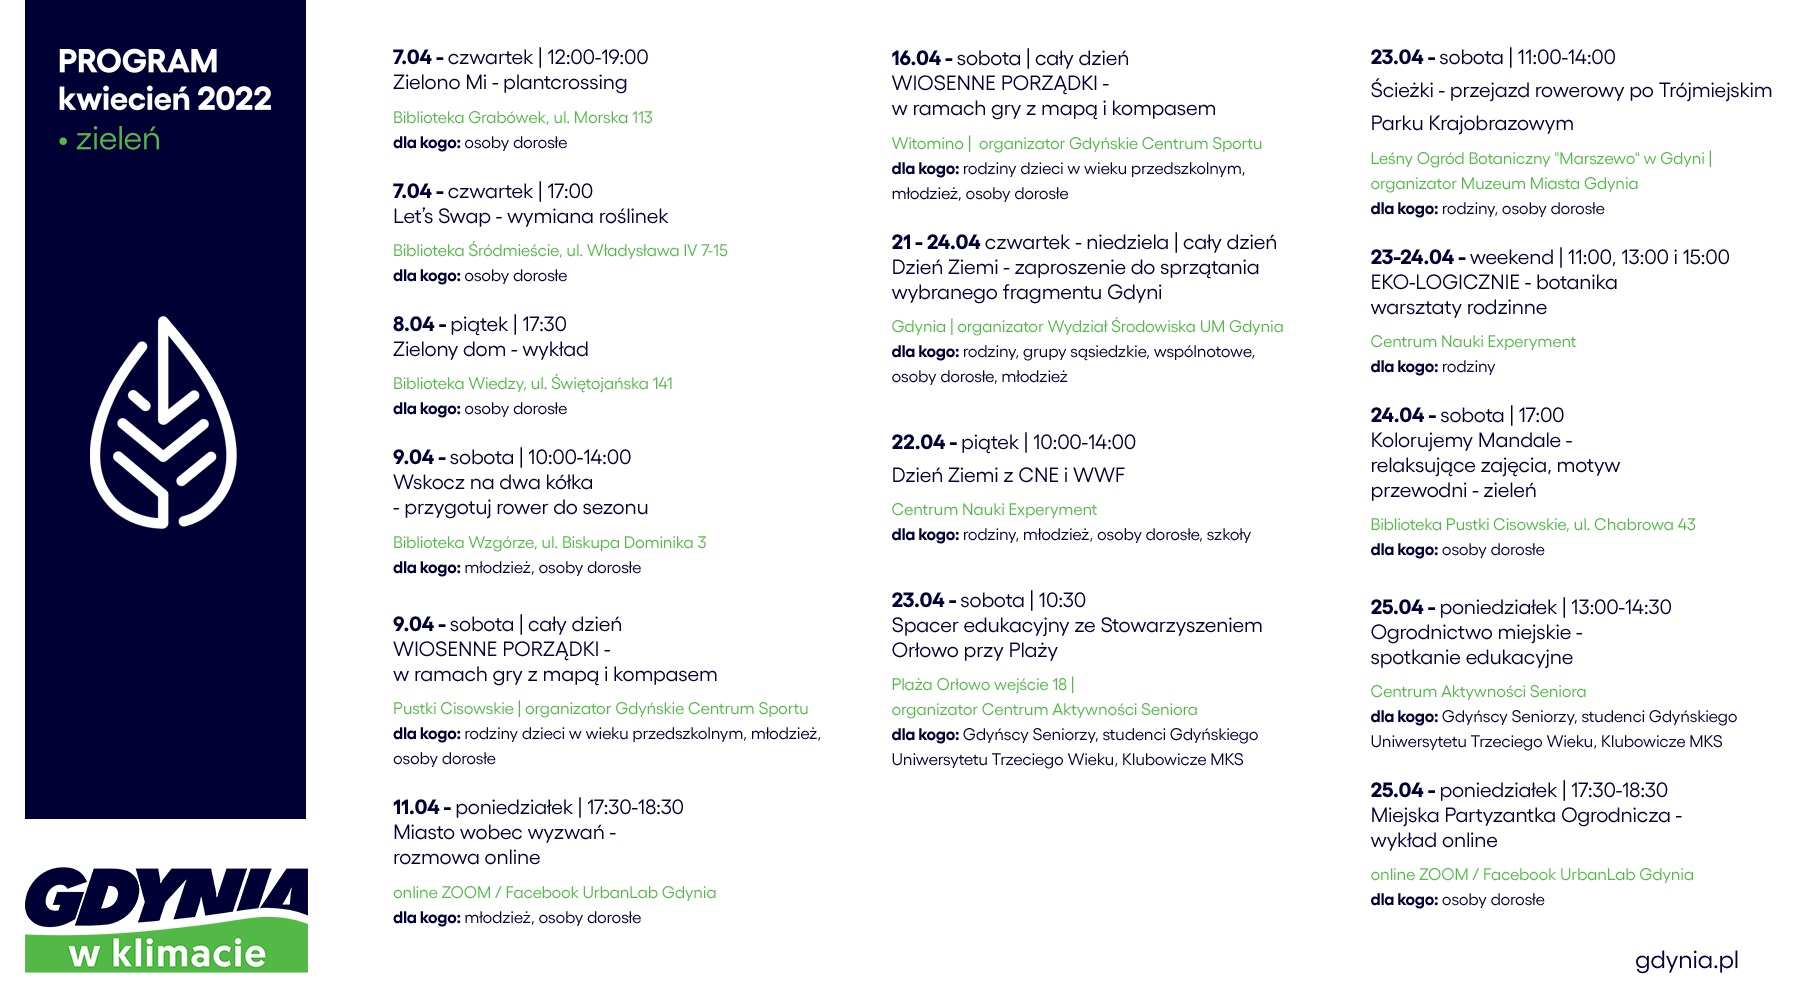 Grafika z listą aktywności przygotowanych w ramach programu "Gdynia w klimacie". Na białym tle umieszczono logo programu oraz granatowe i zielone napisy (daty, godziny, lokalizacje i nazwy przygotowanych atrakcji)